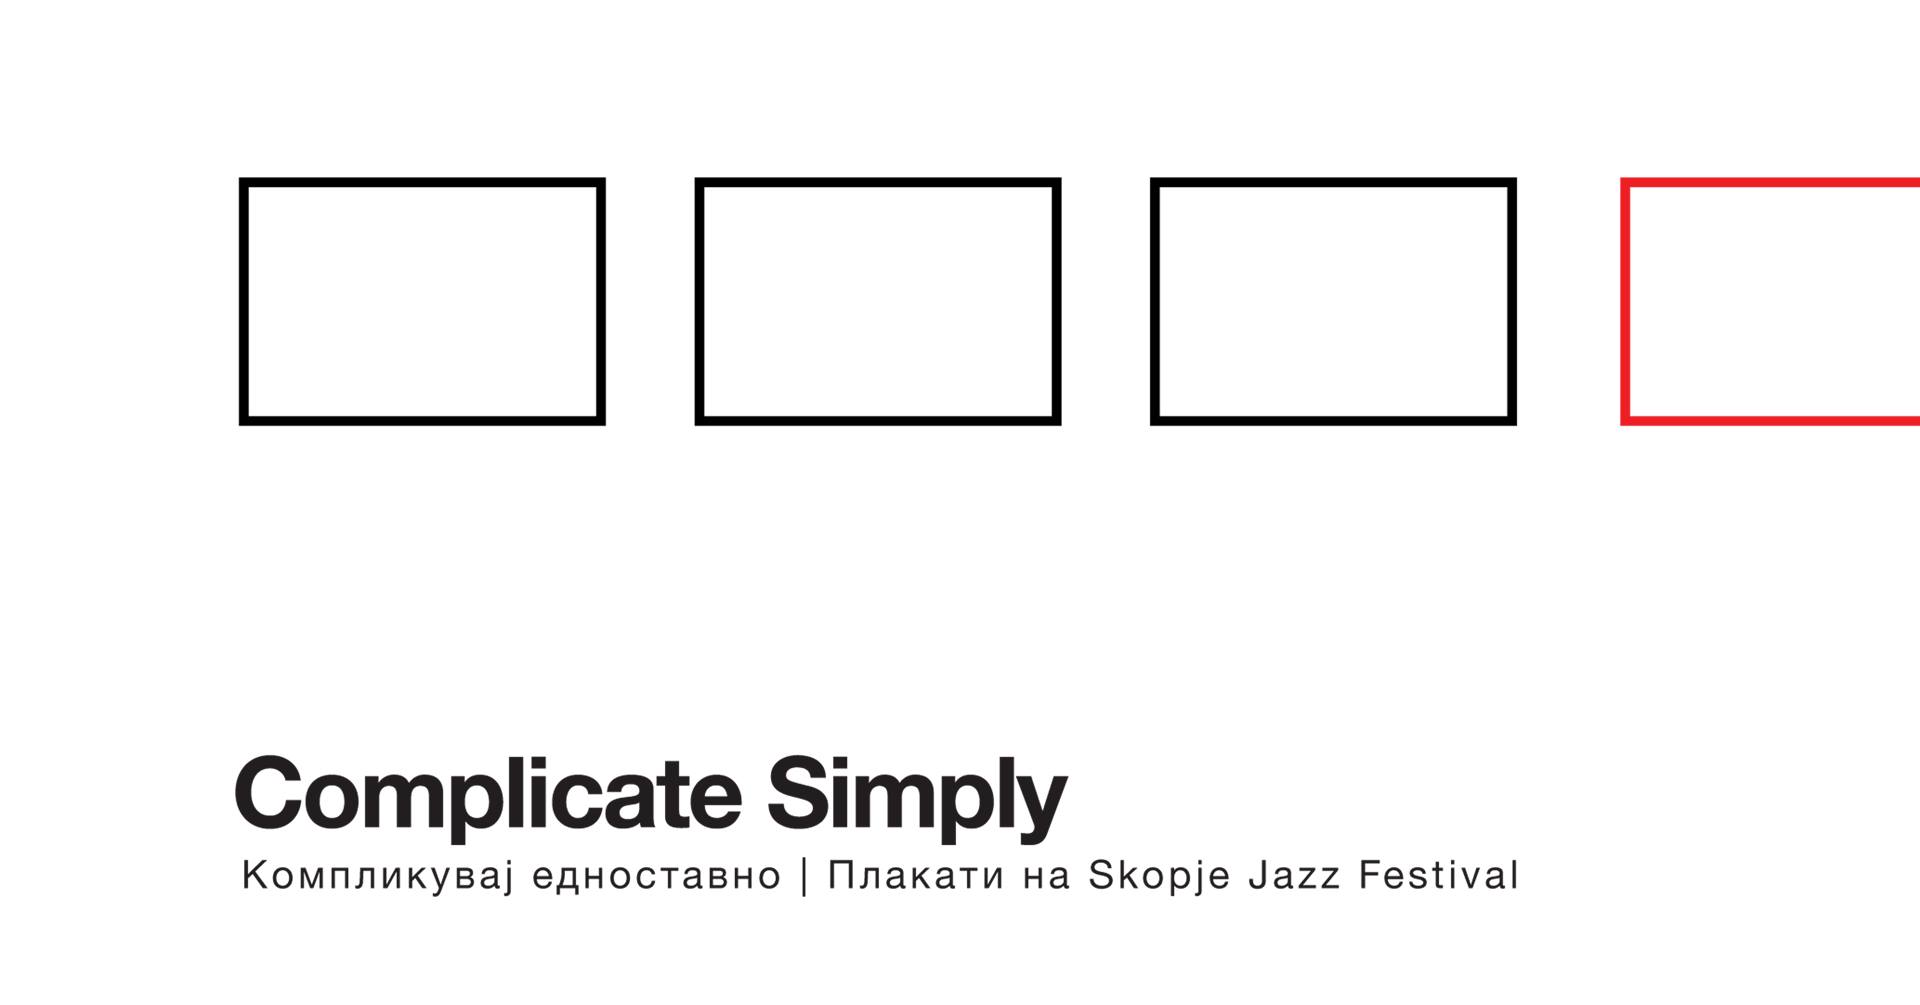 Изложба на плакати на Скопскиот џез фестивал – Complicate Simply!